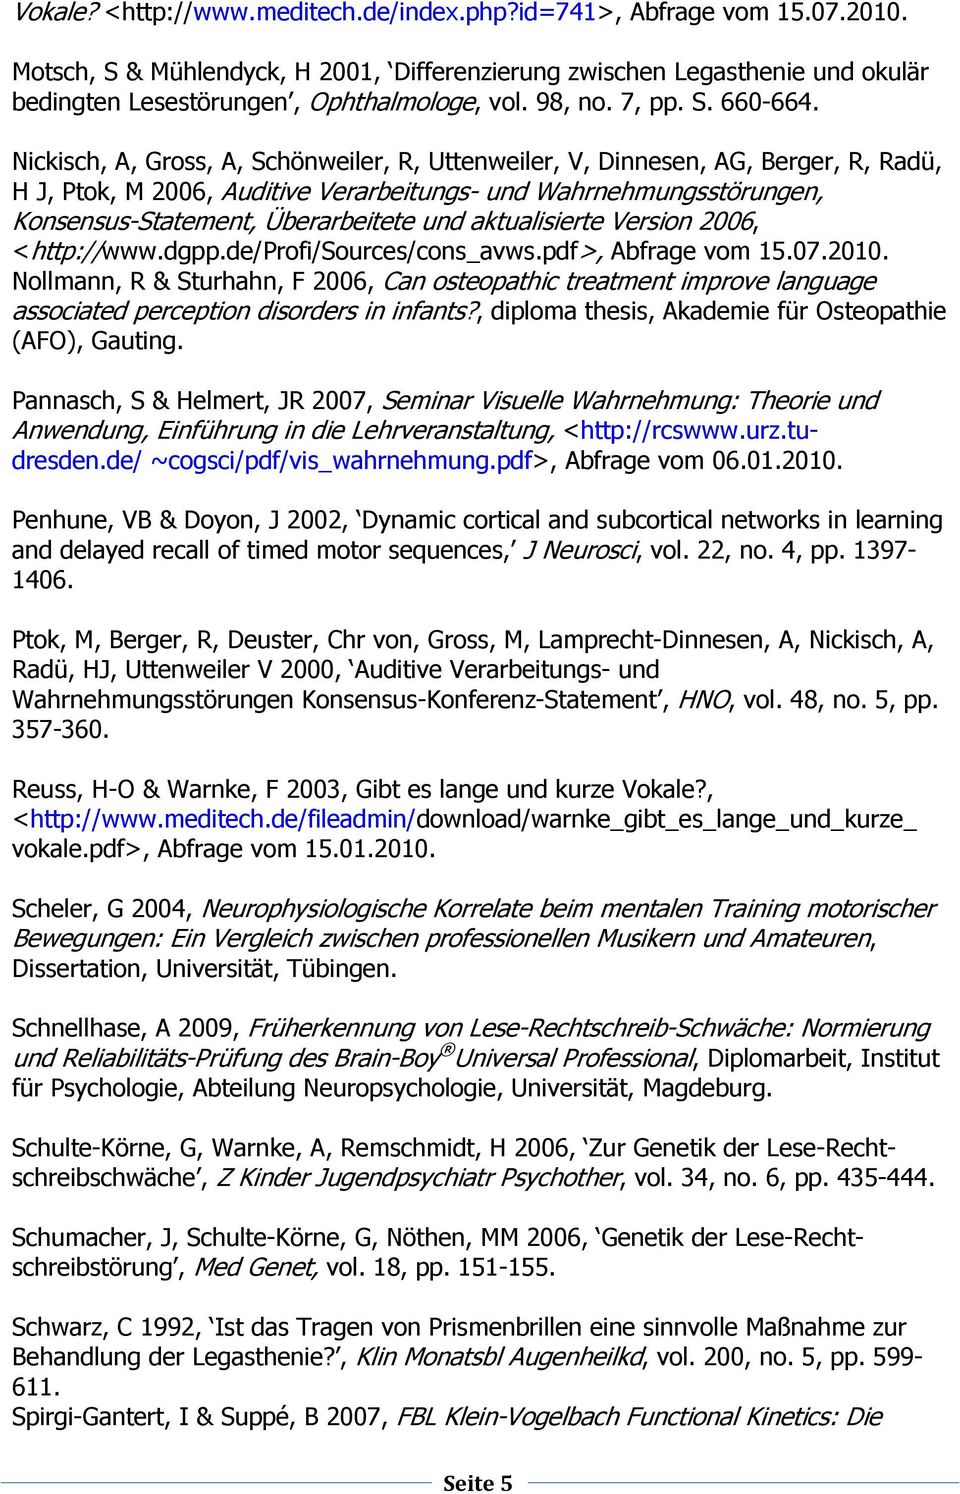 Nickisch, A, Gross, A, Schönweiler, R, Uttenweiler, V, Dinnesen, AG, Berger, R, Radü, H J, Ptok, M 2006, Auditive Verarbeitungs- und Wahrnehmungsstörungen, Konsensus-Statement, Überarbeitete und